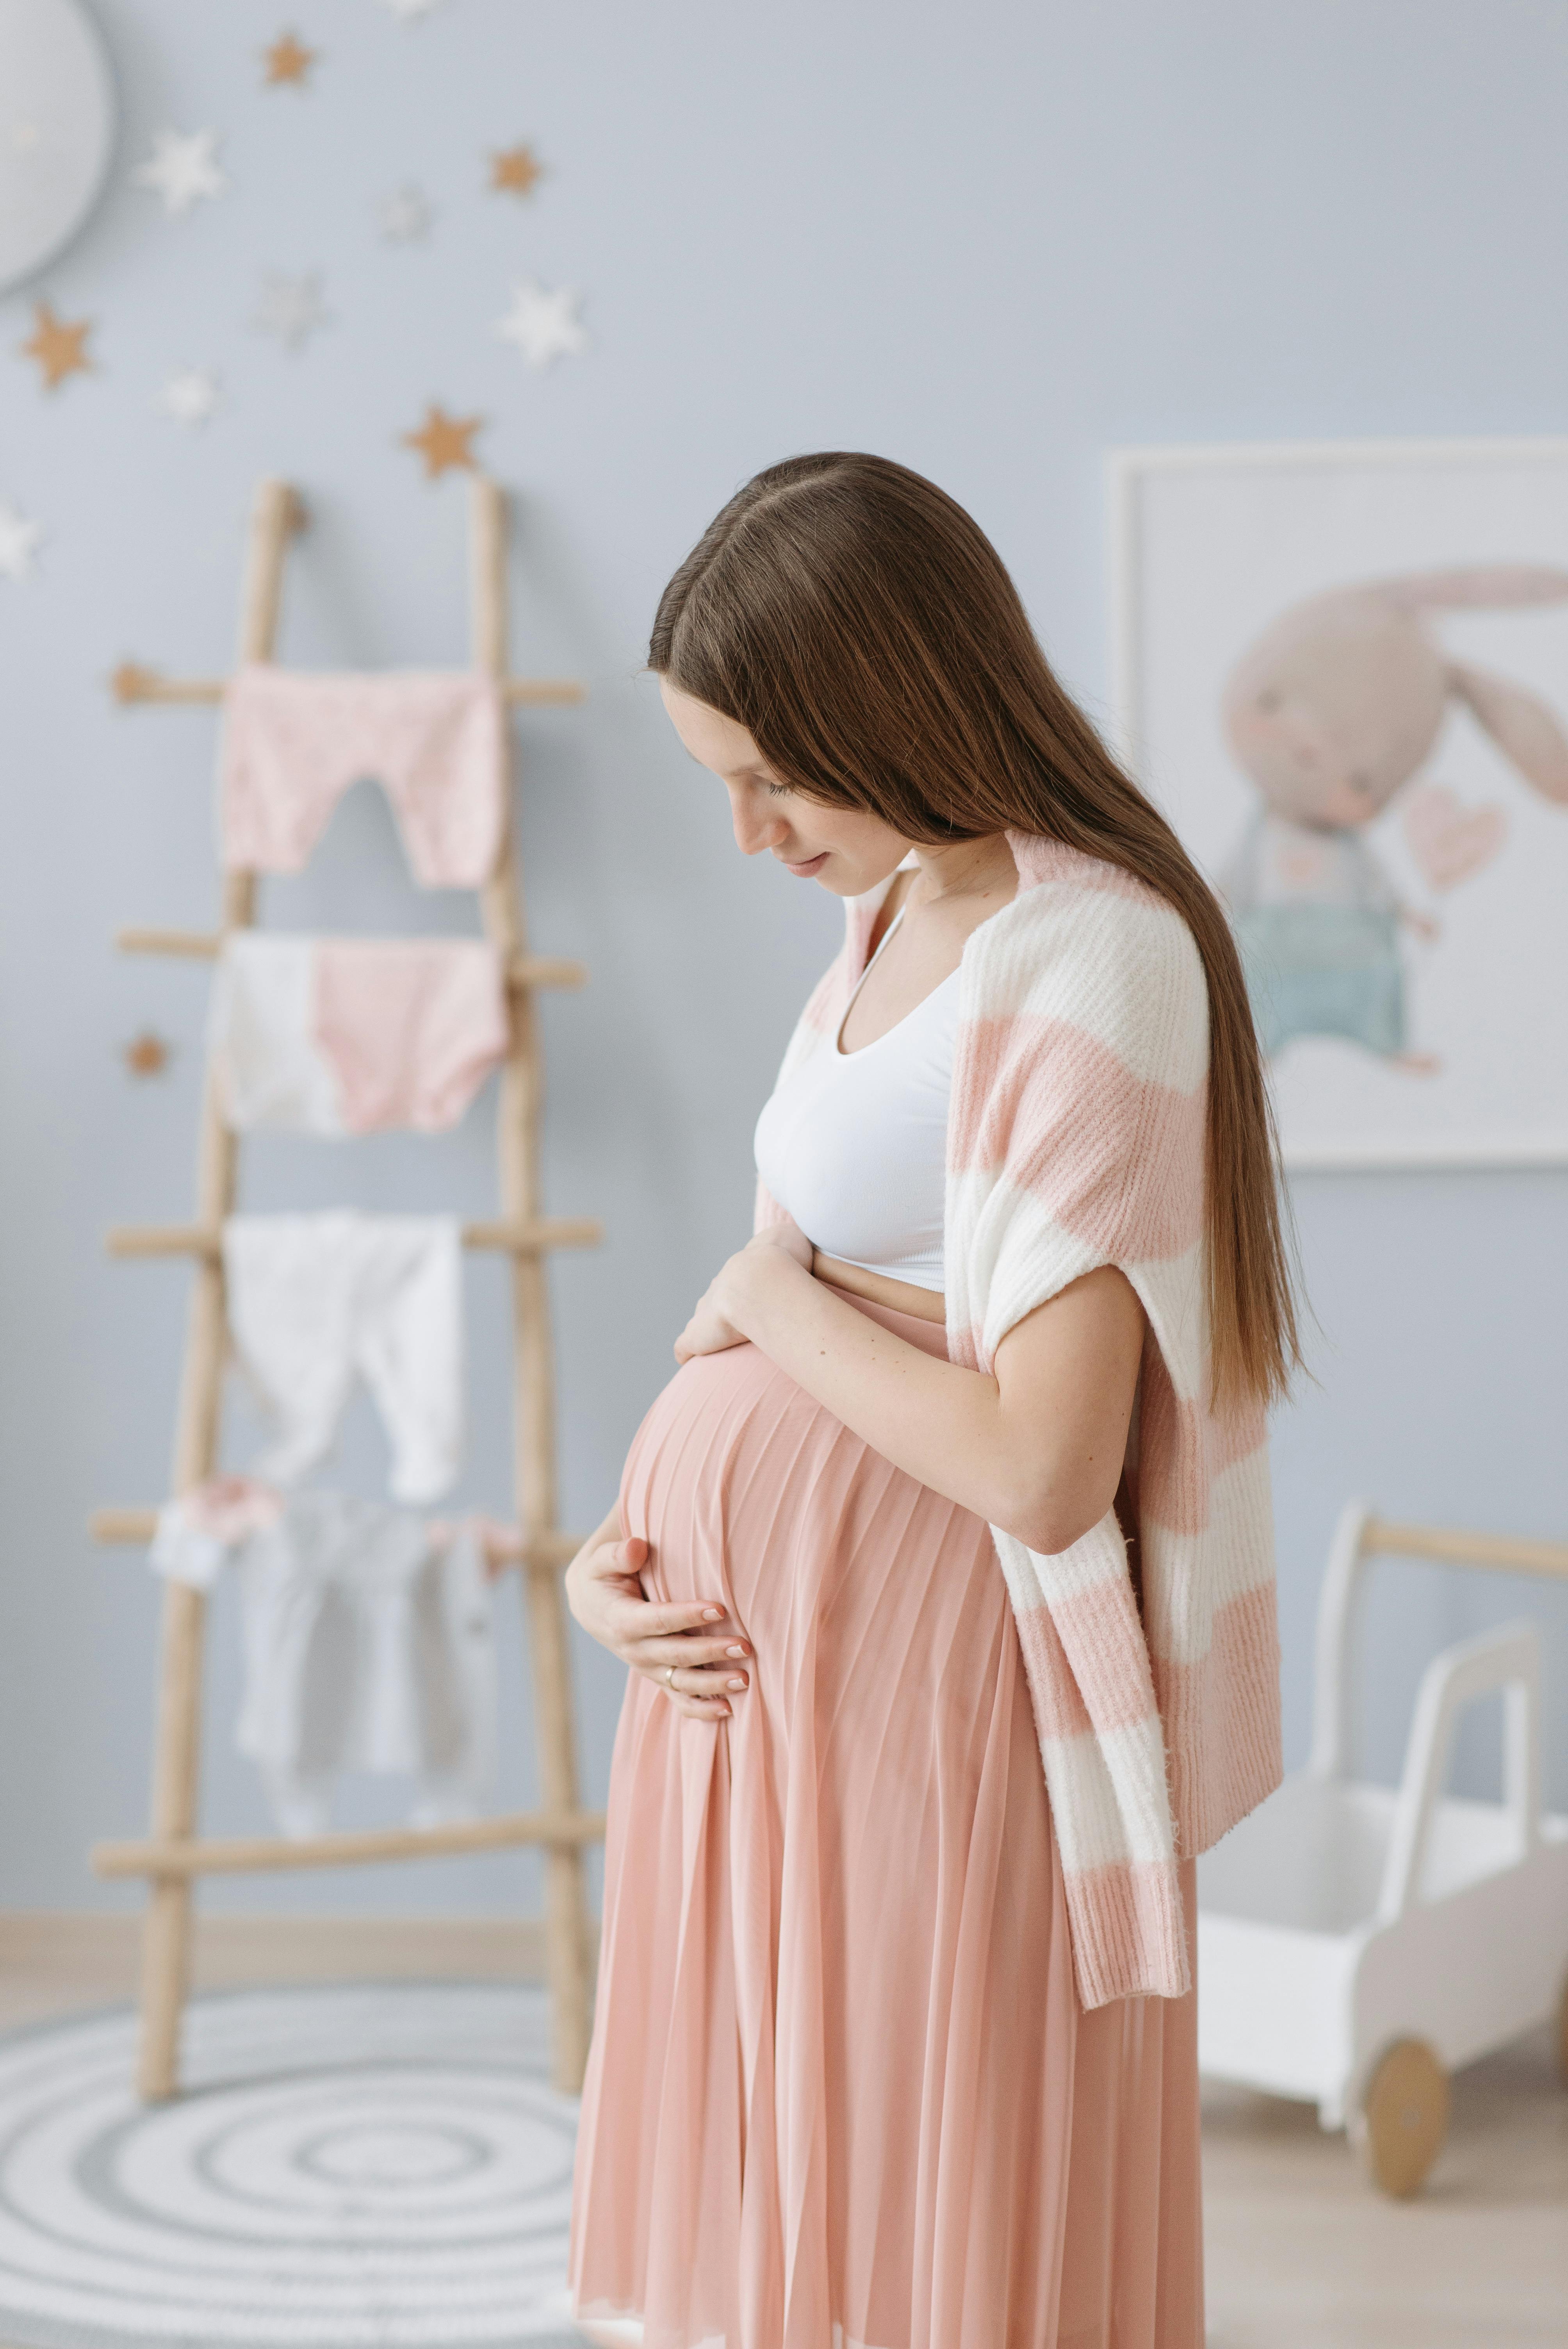 Una mujer embarazada sujetándose el vientre en la habitación de su futuro bebé | Foto: Pexels